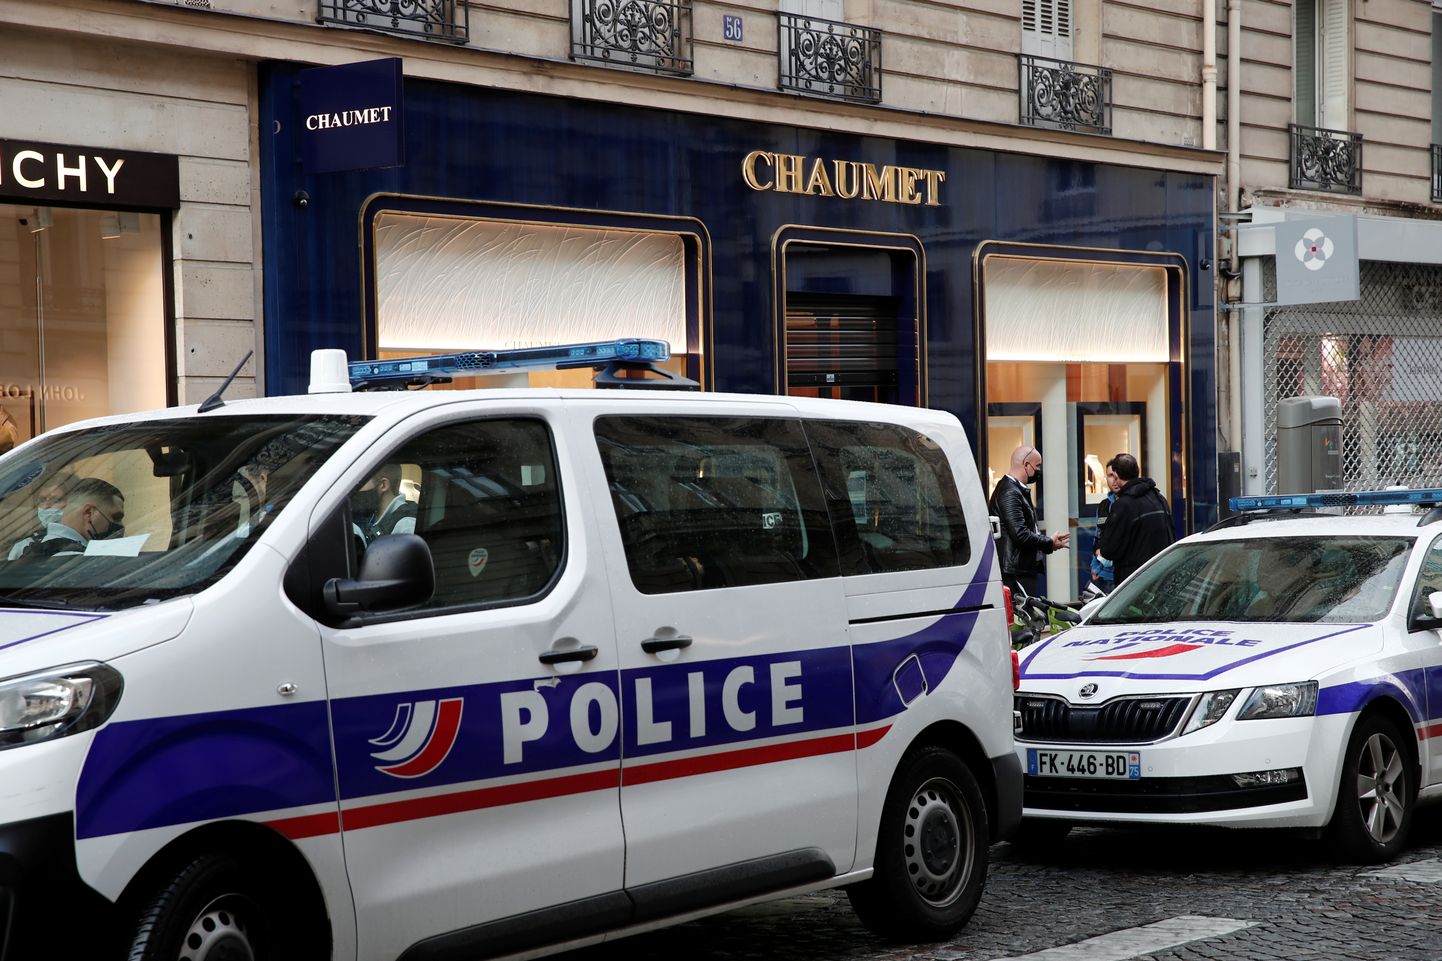 Prantsuse politsei autod Pariisis Chaumet juveelipoe ees. Varas viis sealt kolme miljoni euro eest vääriskive ja ehteid